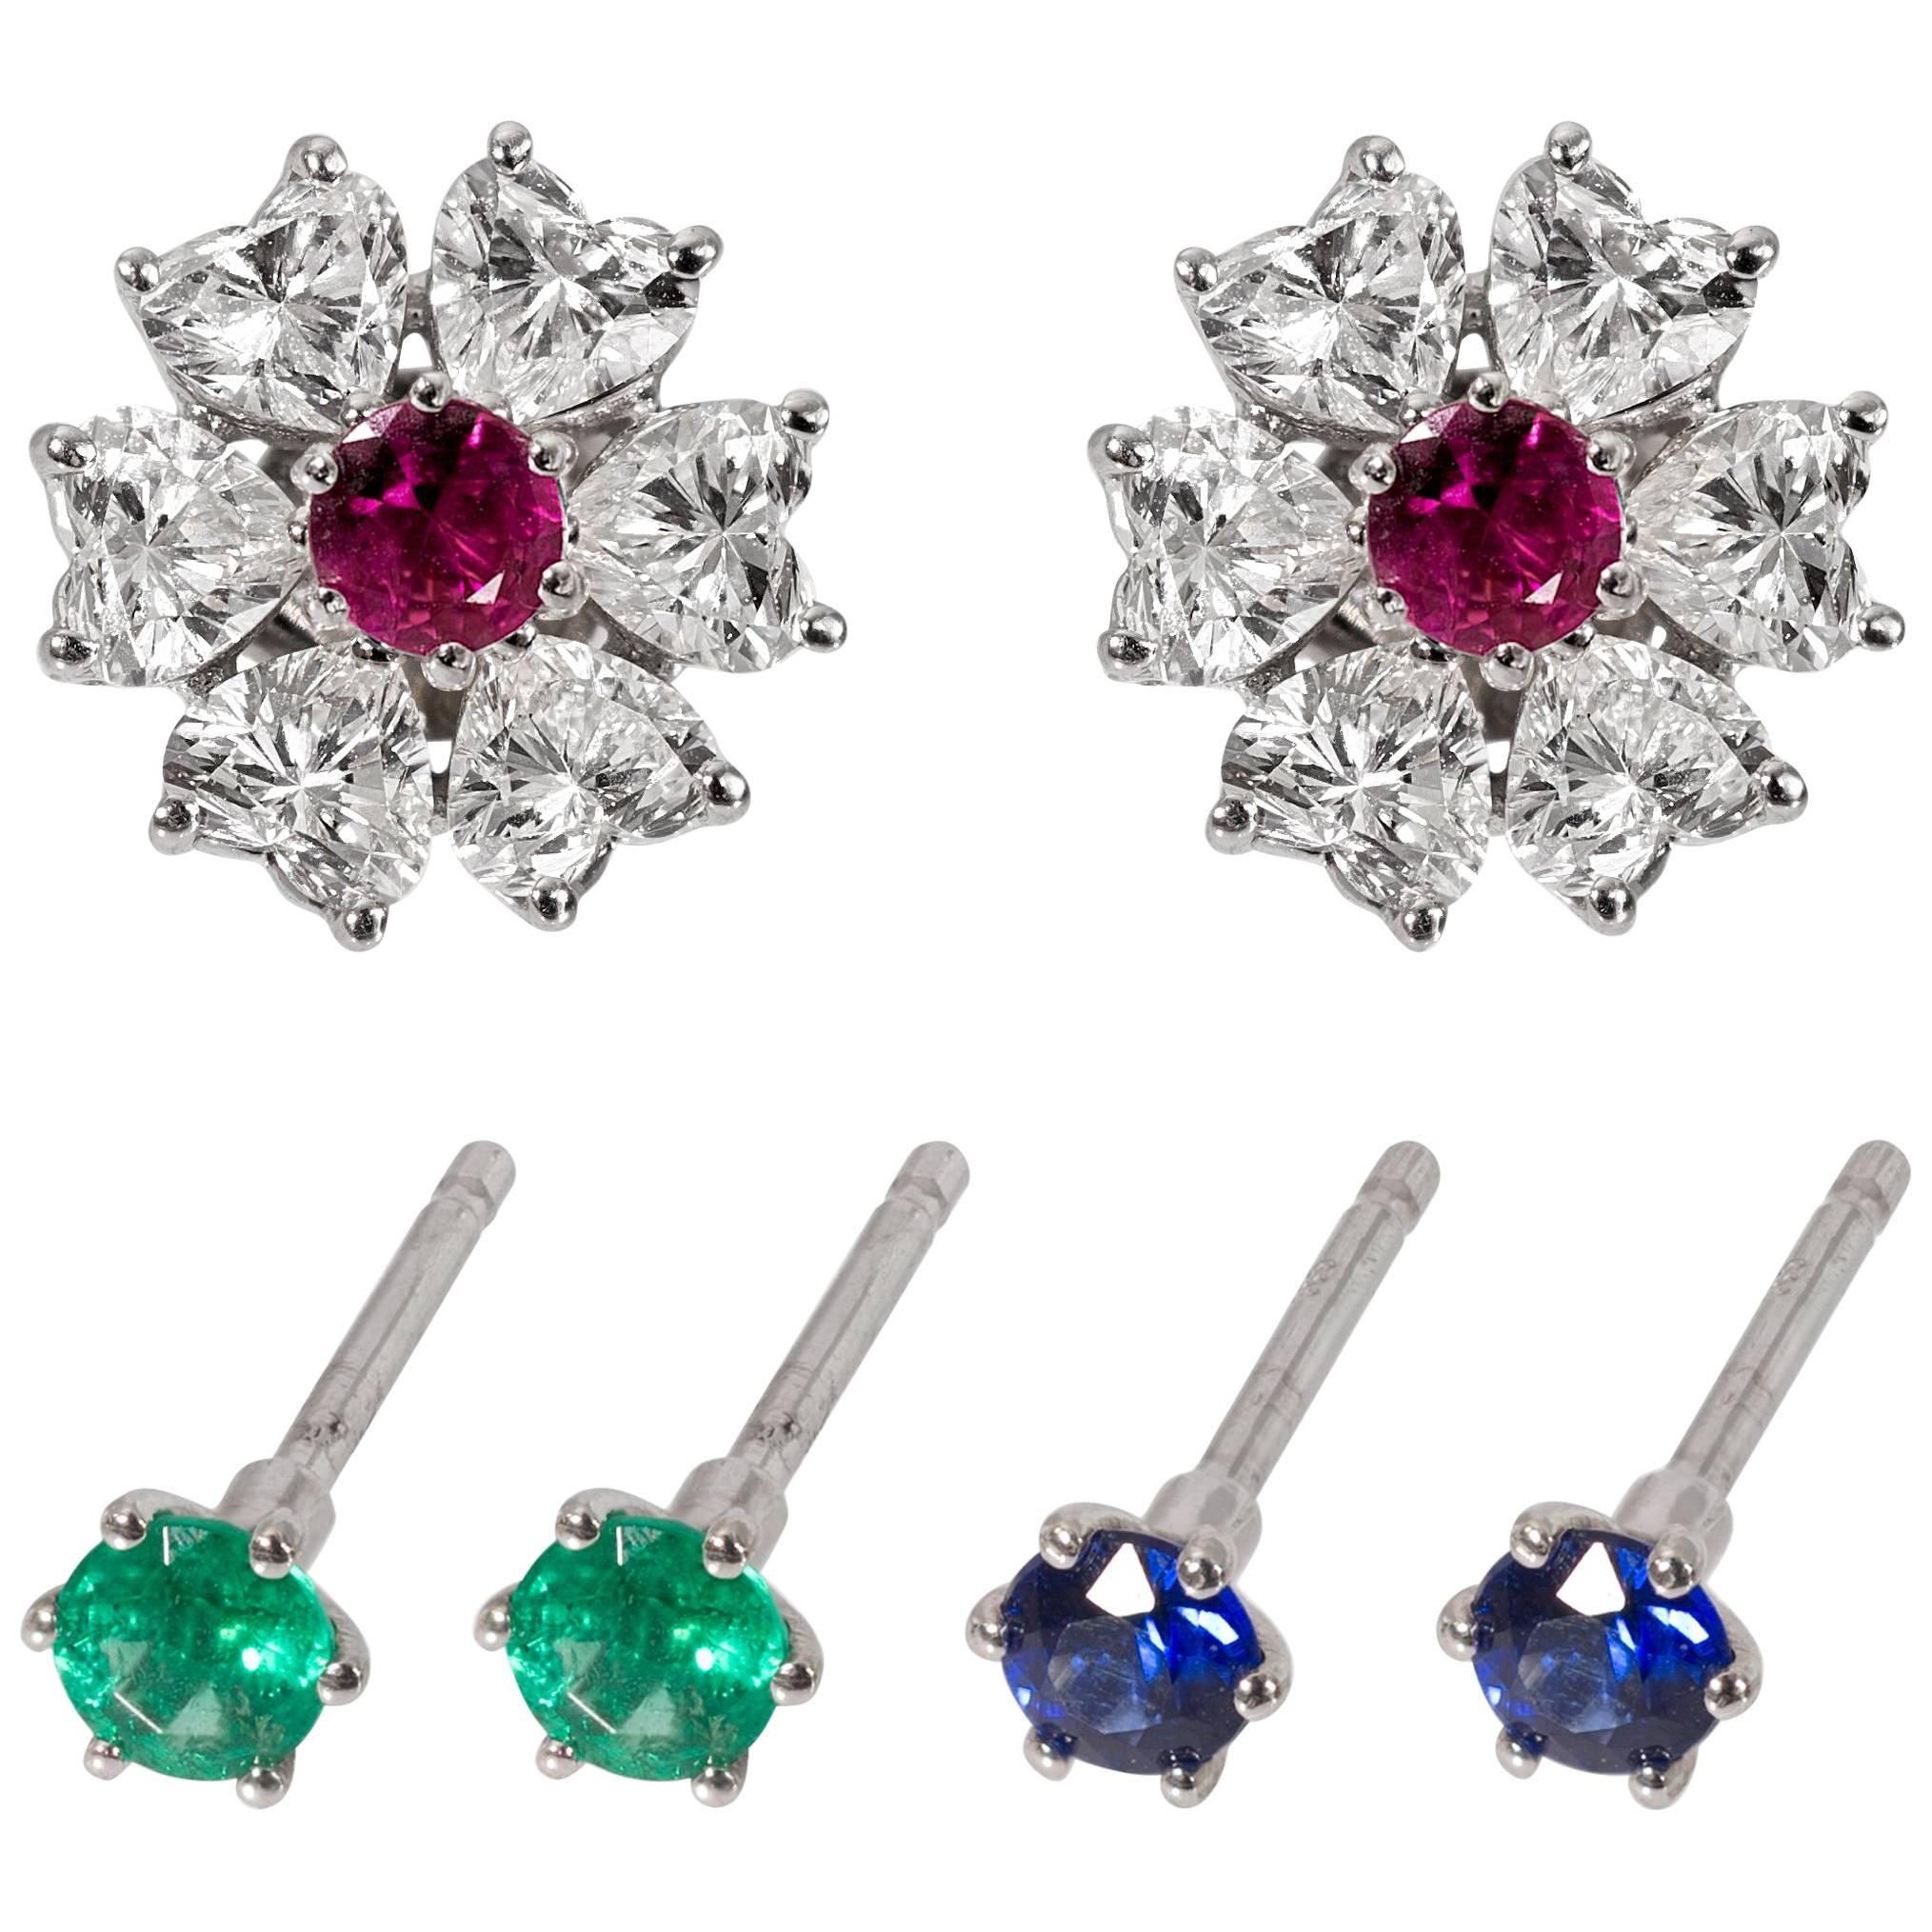 Floral Interchangeable Diamond Earrings Set, EGL Certified